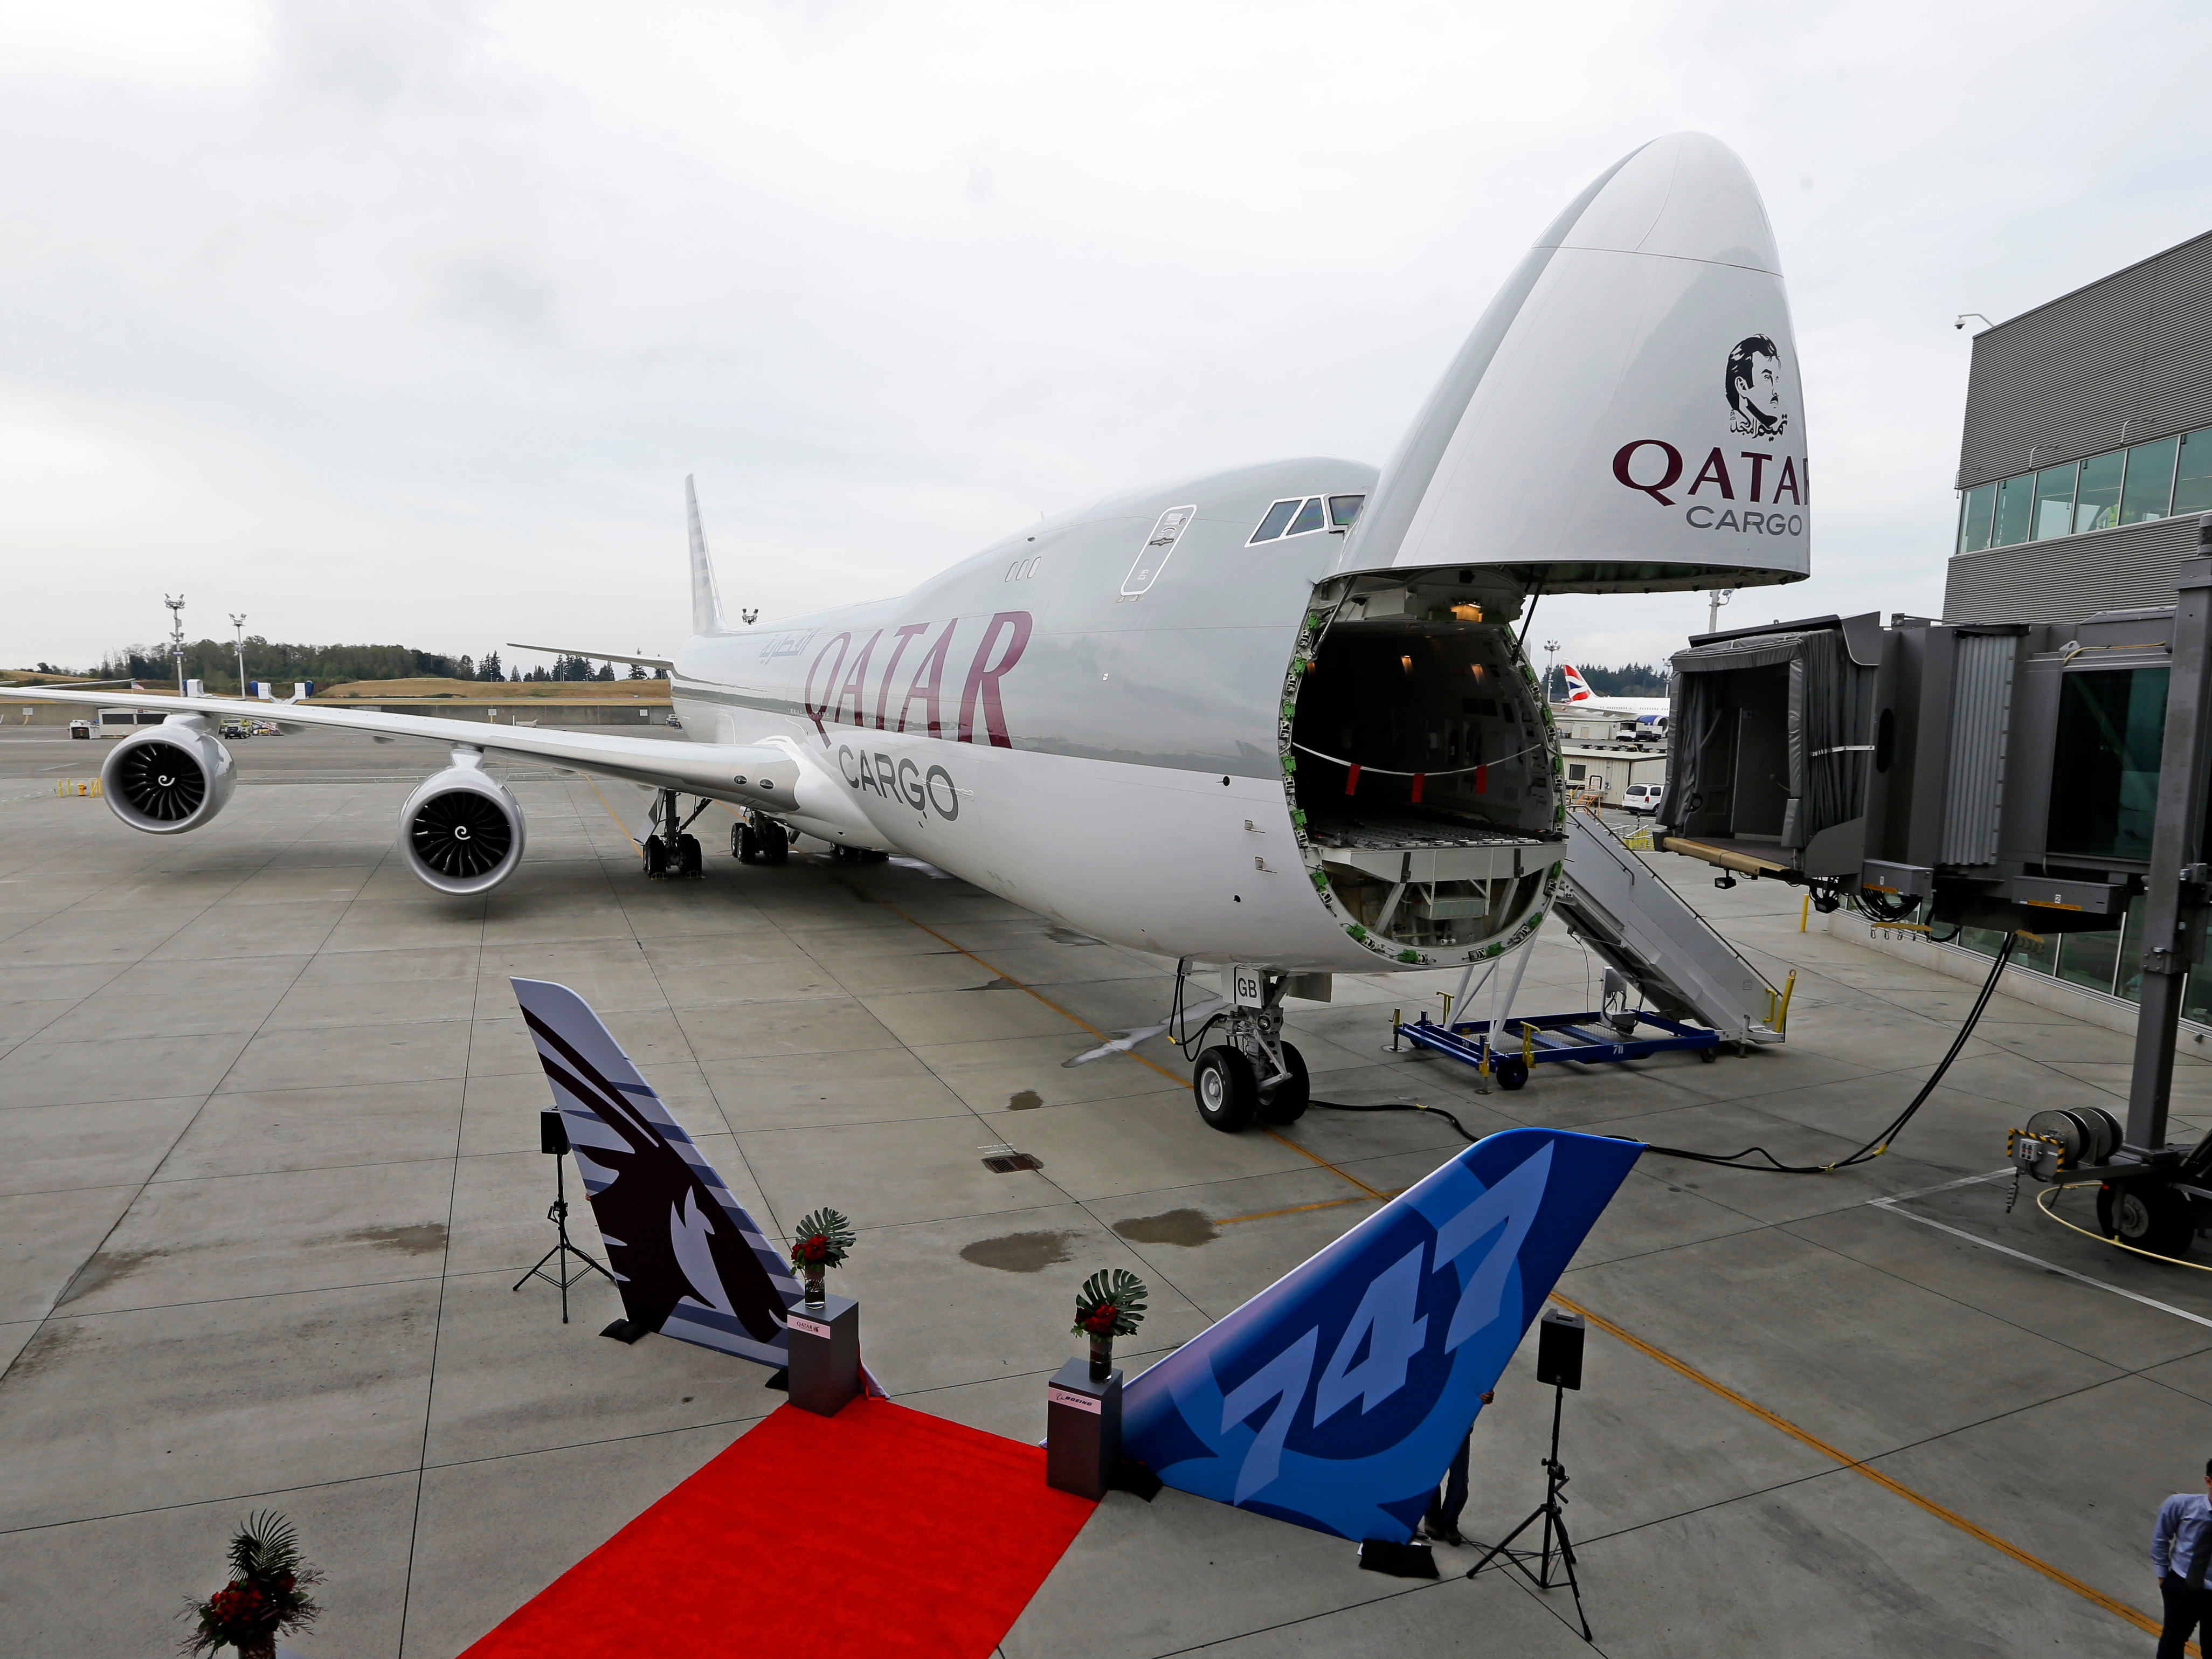 Qatar Airways Cargo Boeing 747-8F